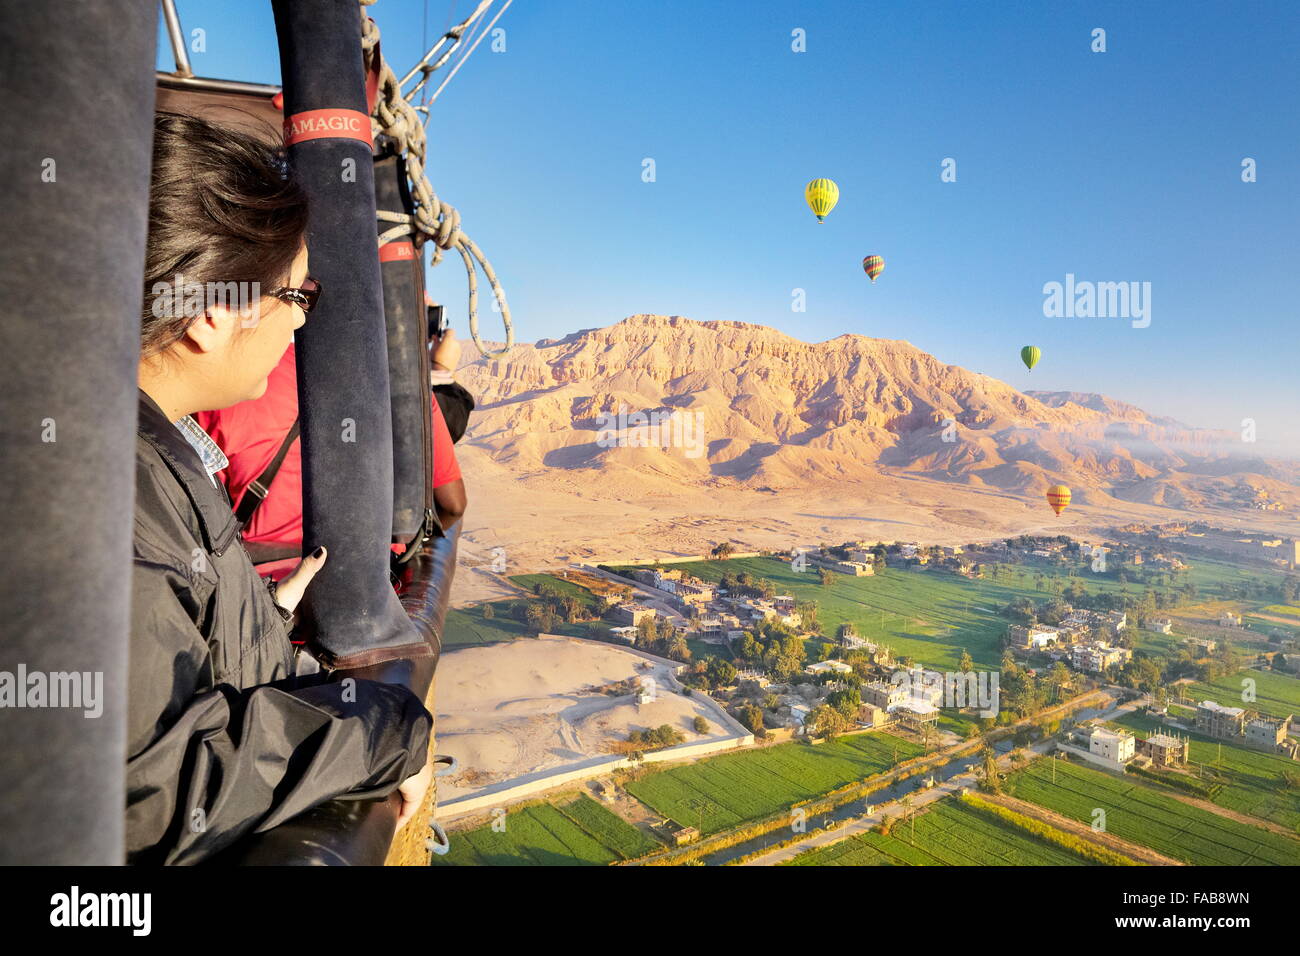 Égypte - vols en montgolfière sur la rive ouest du Nil, paysage de montagnes et de la vallée verte Banque D'Images